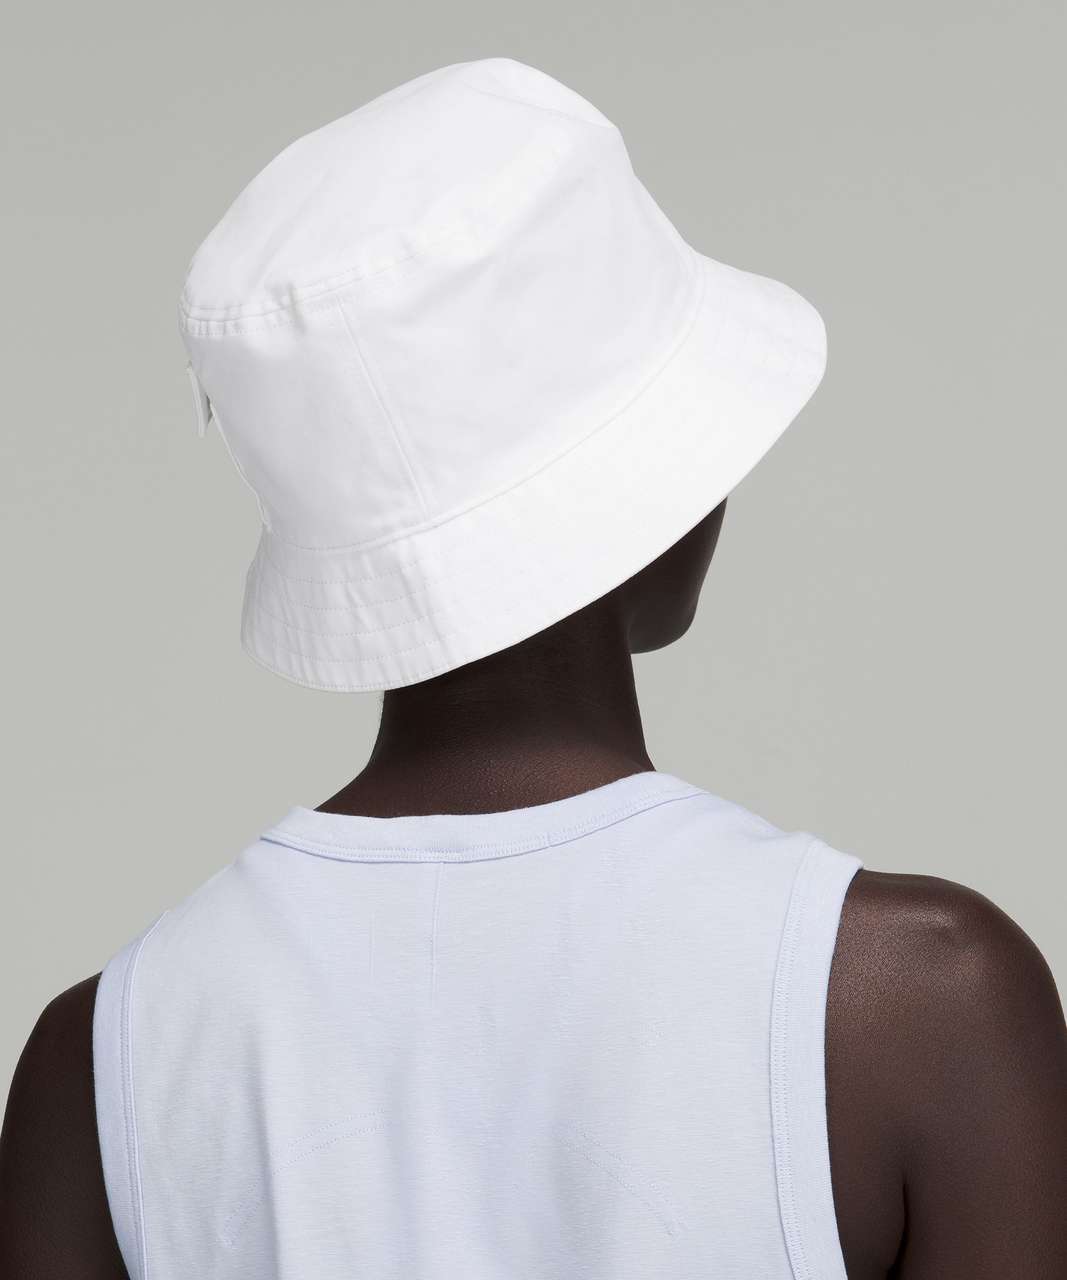 Lululemon On My Level Bucket Hat with Pocket - White